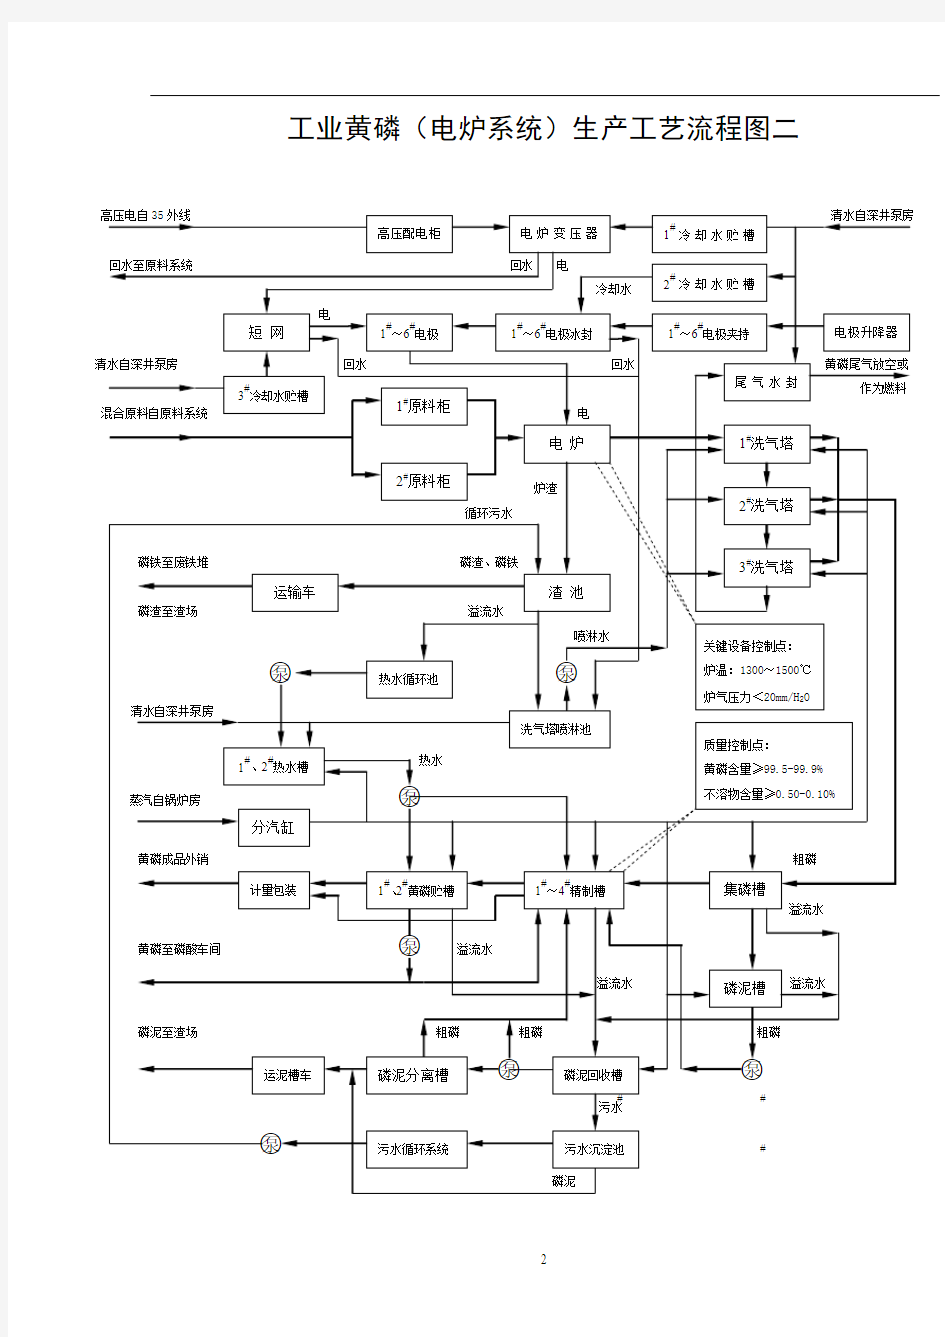 工业黄磷生产工艺流程图(二)